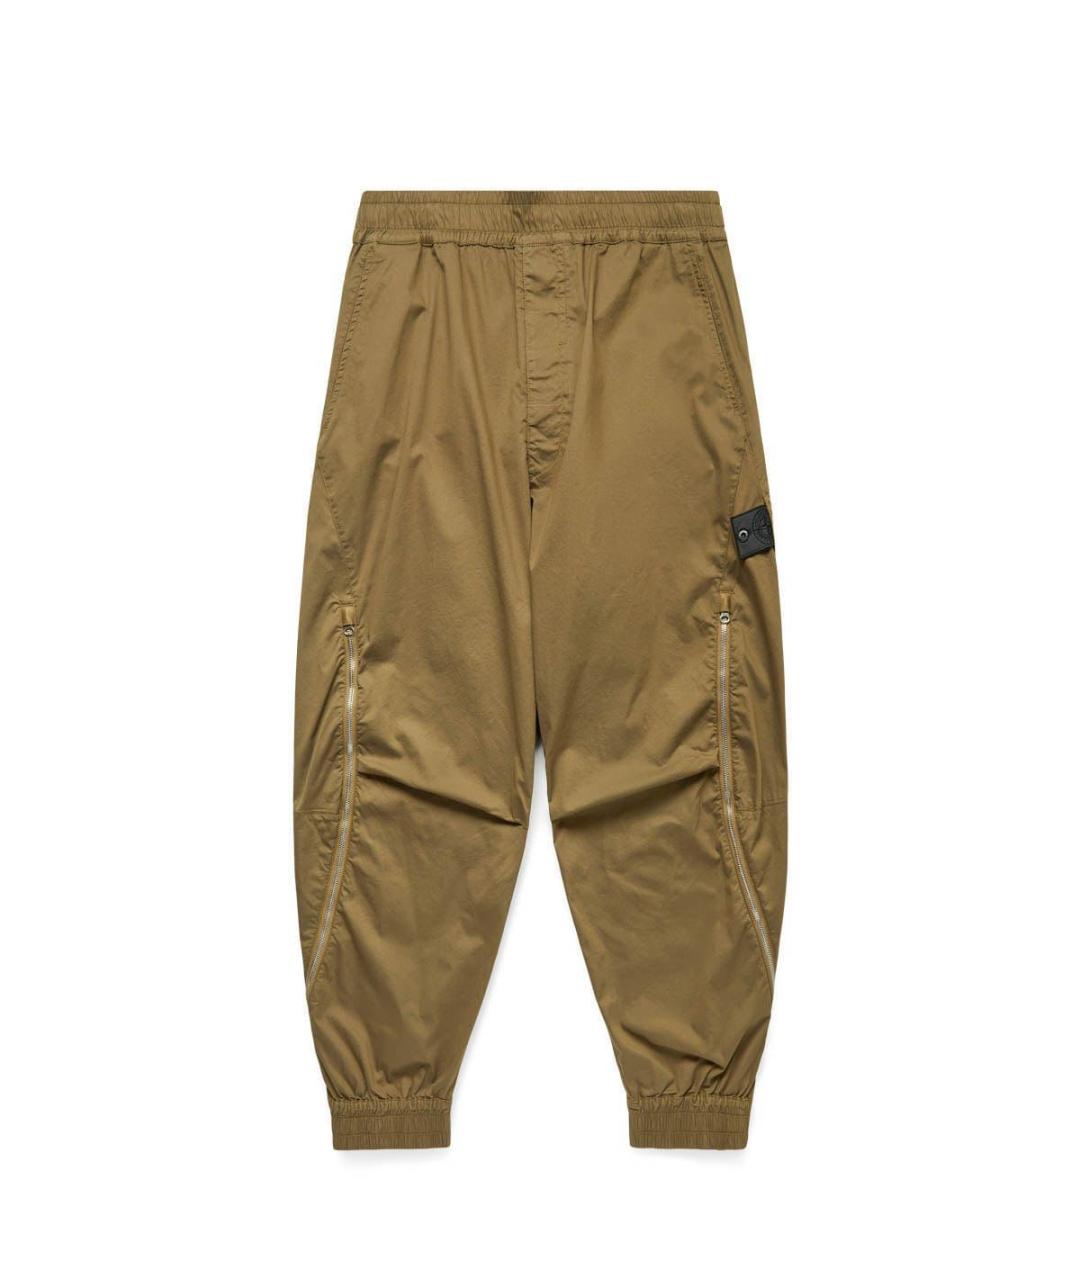 STONE ISLAND SHADOW PROJECT Коричневые хлопковые повседневные брюки, фото 1